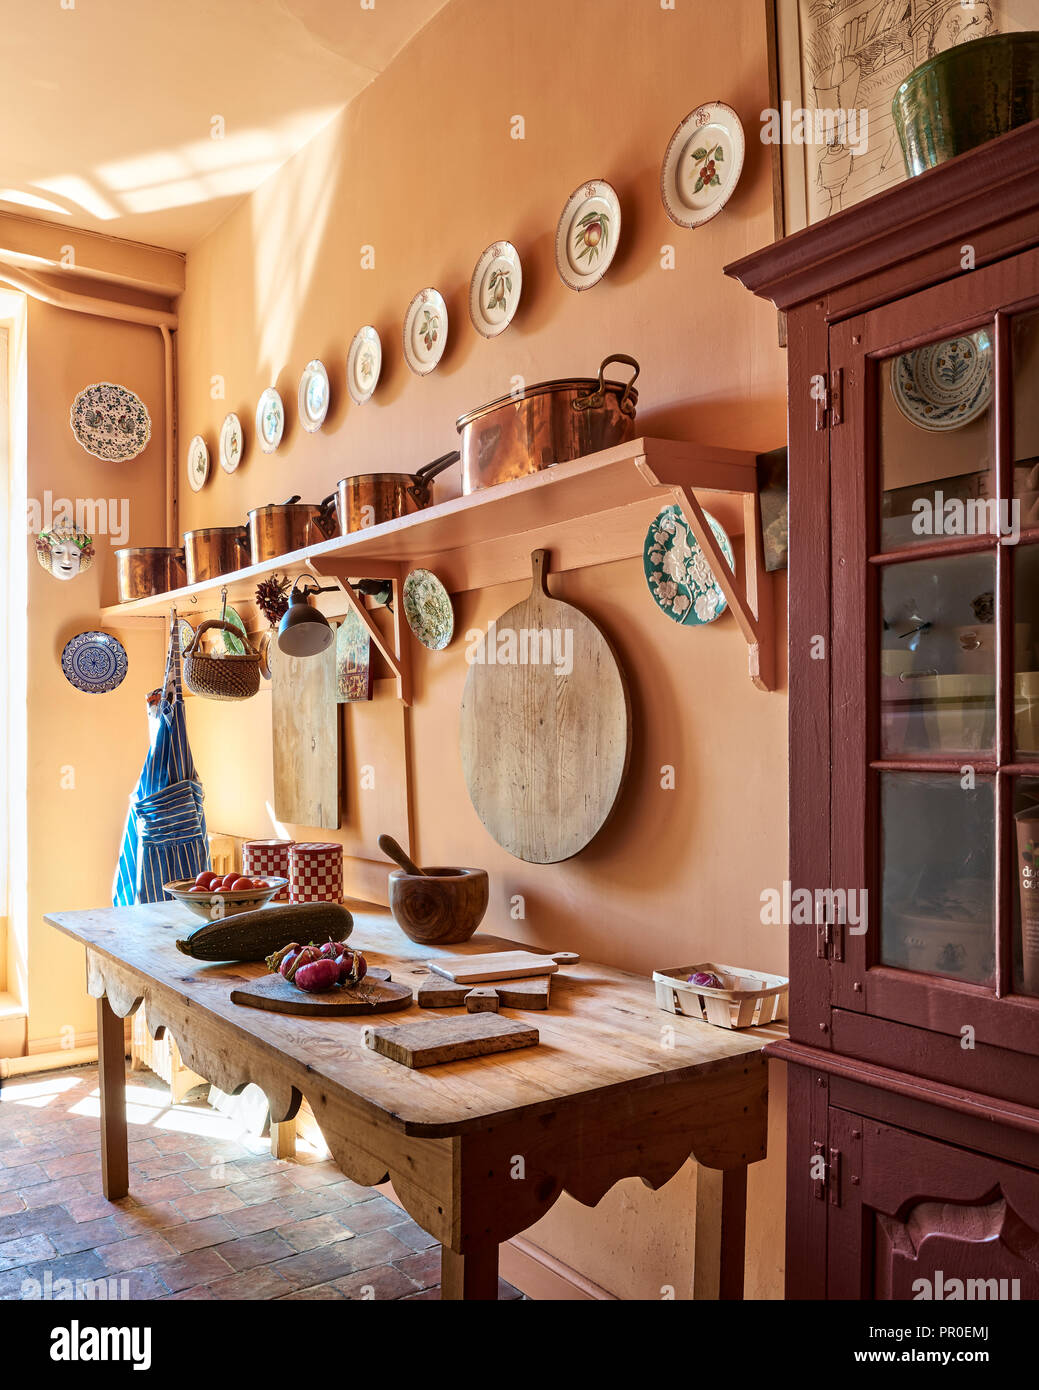 Casale rustico cucina con grande tagliere e pentole in rame Foto